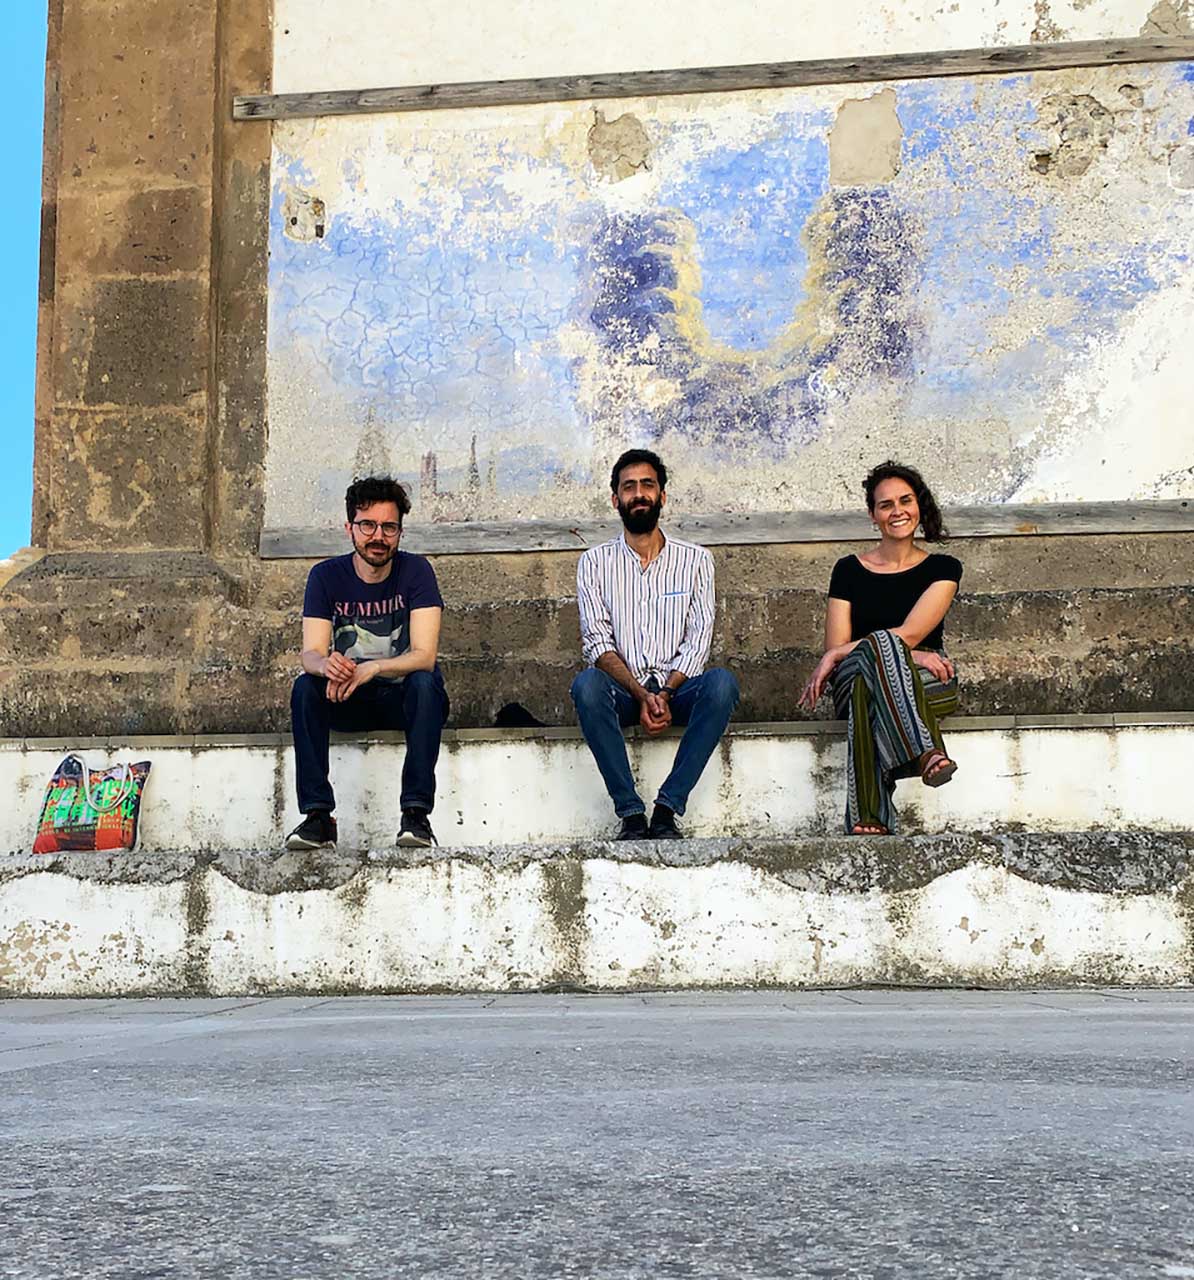 Marea Art Project in Costiera Amalfitana, Stefano Collicelli Cagol, Roberto Pontecorvo e Imma Tralli